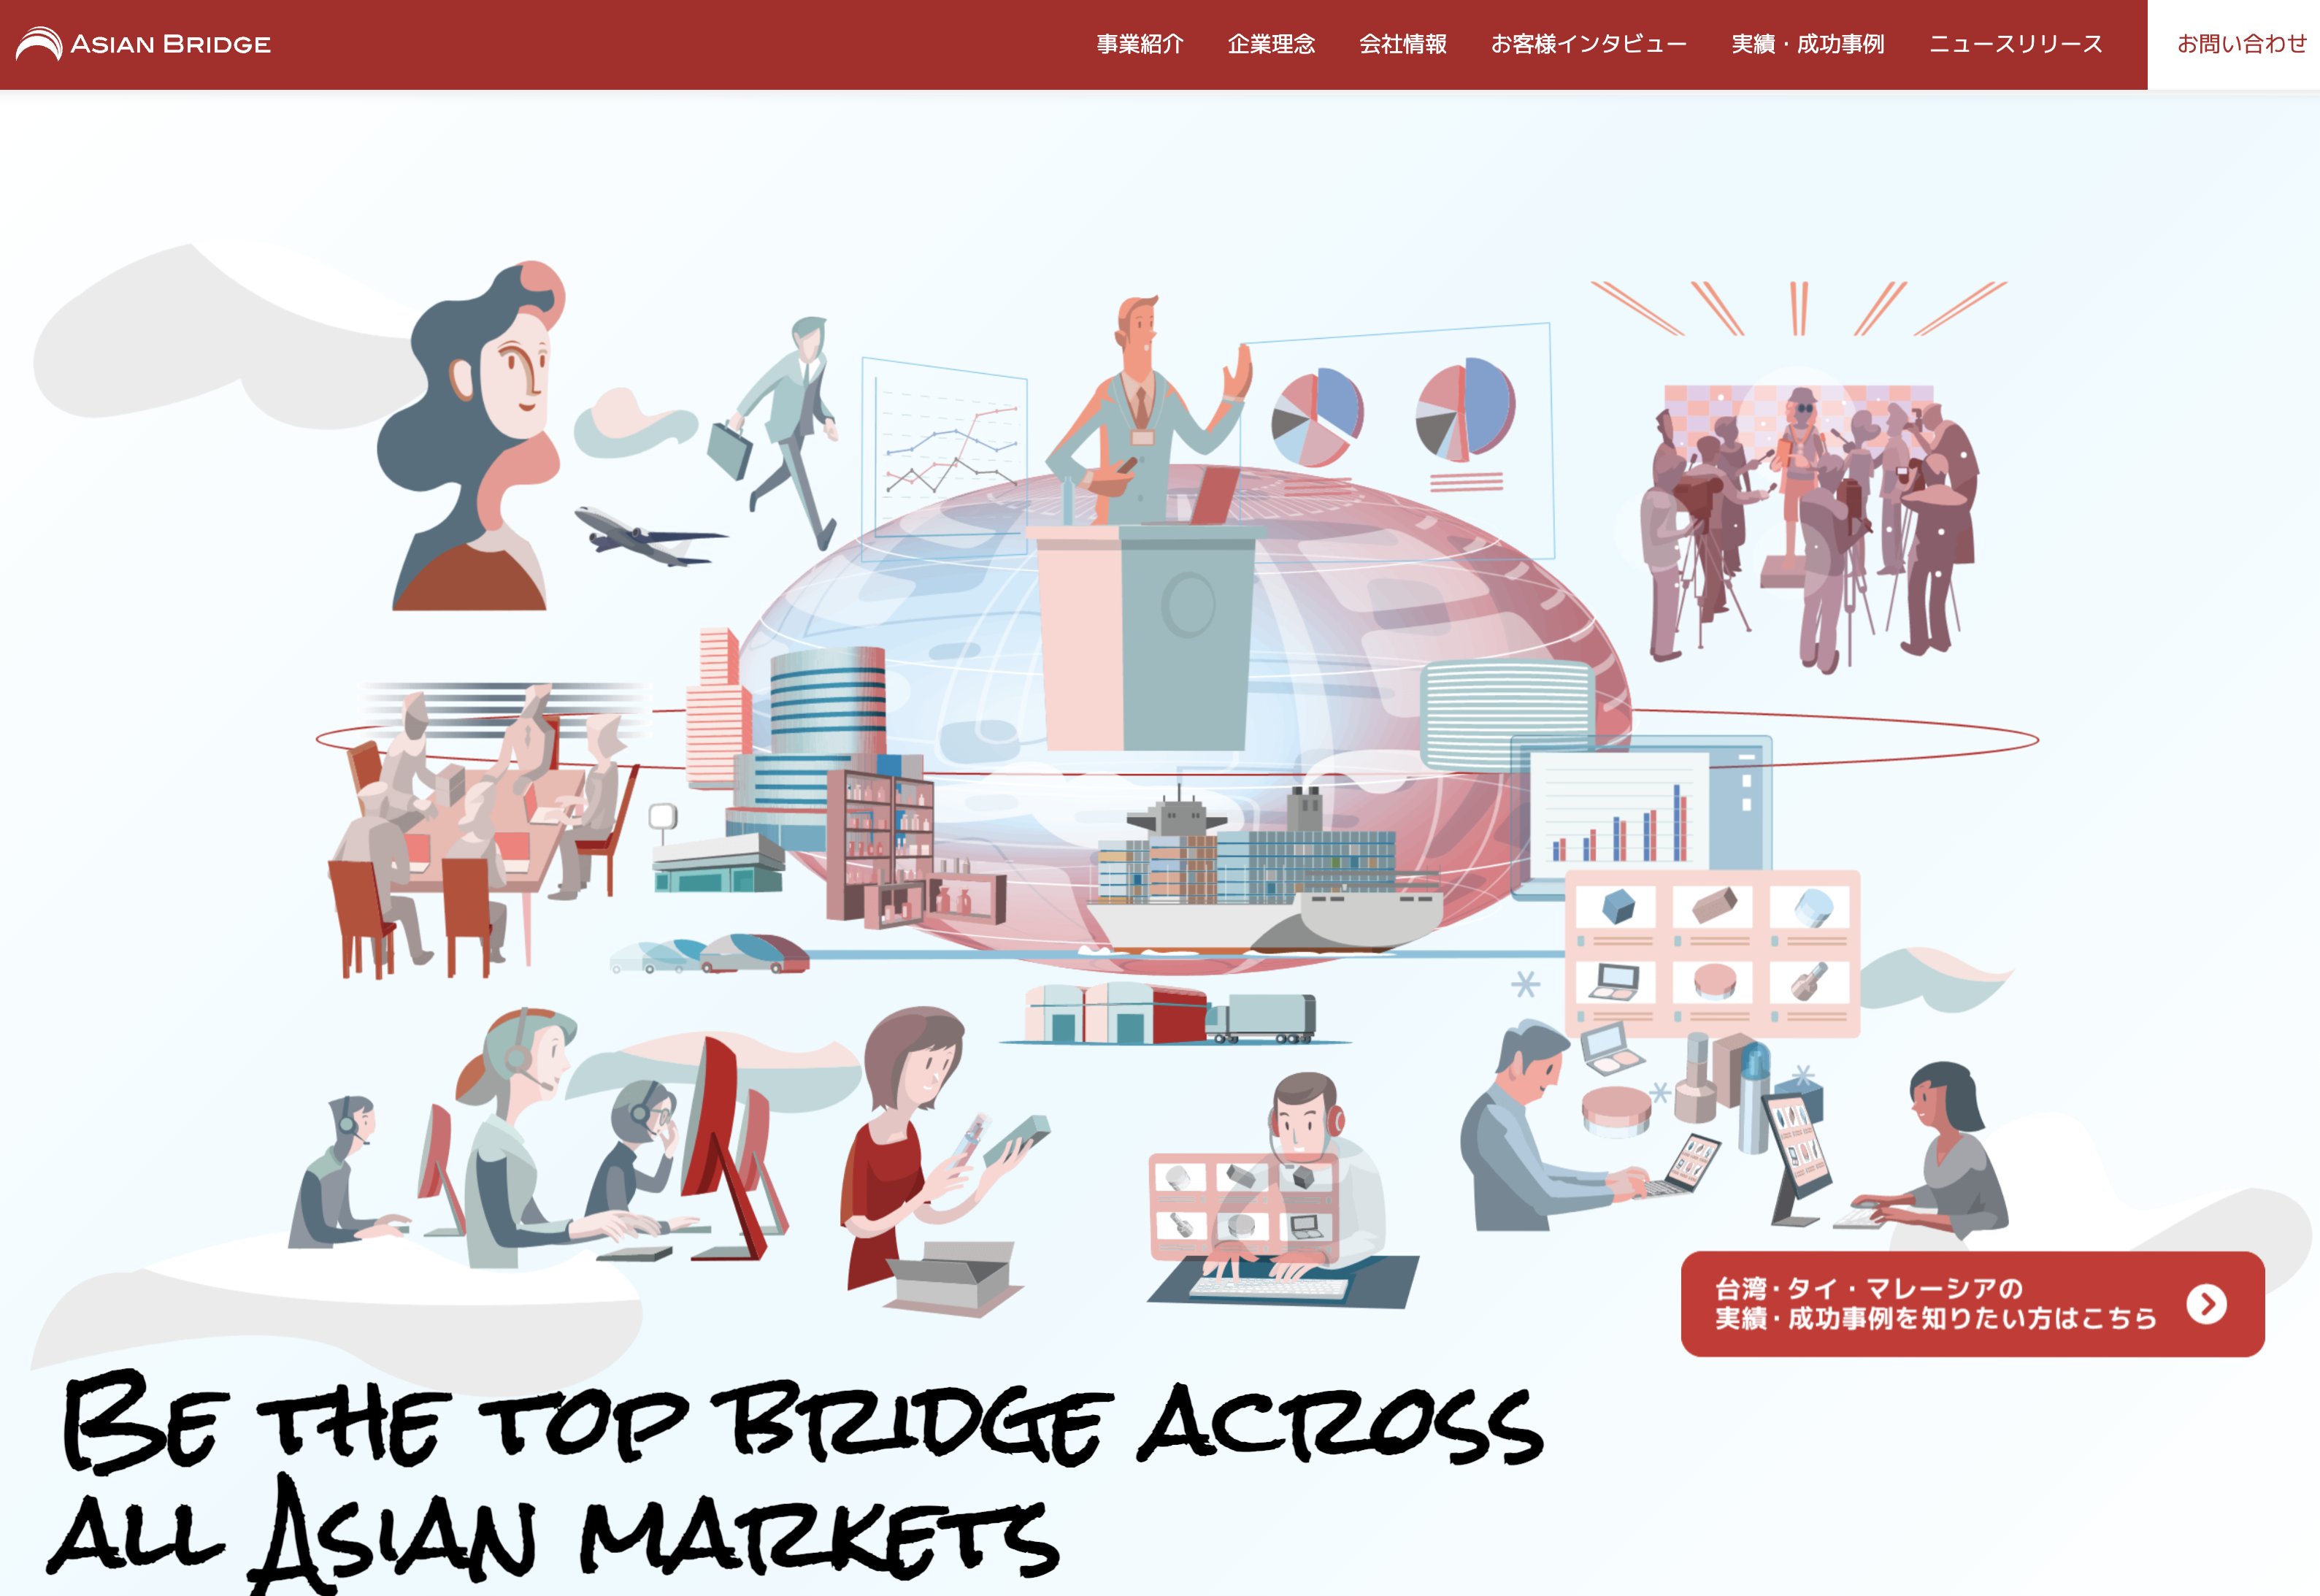 アジアンブリッジ株式会社 香港事業のアジアンブリッジ株式会社 タイ事業:Web広告サービス